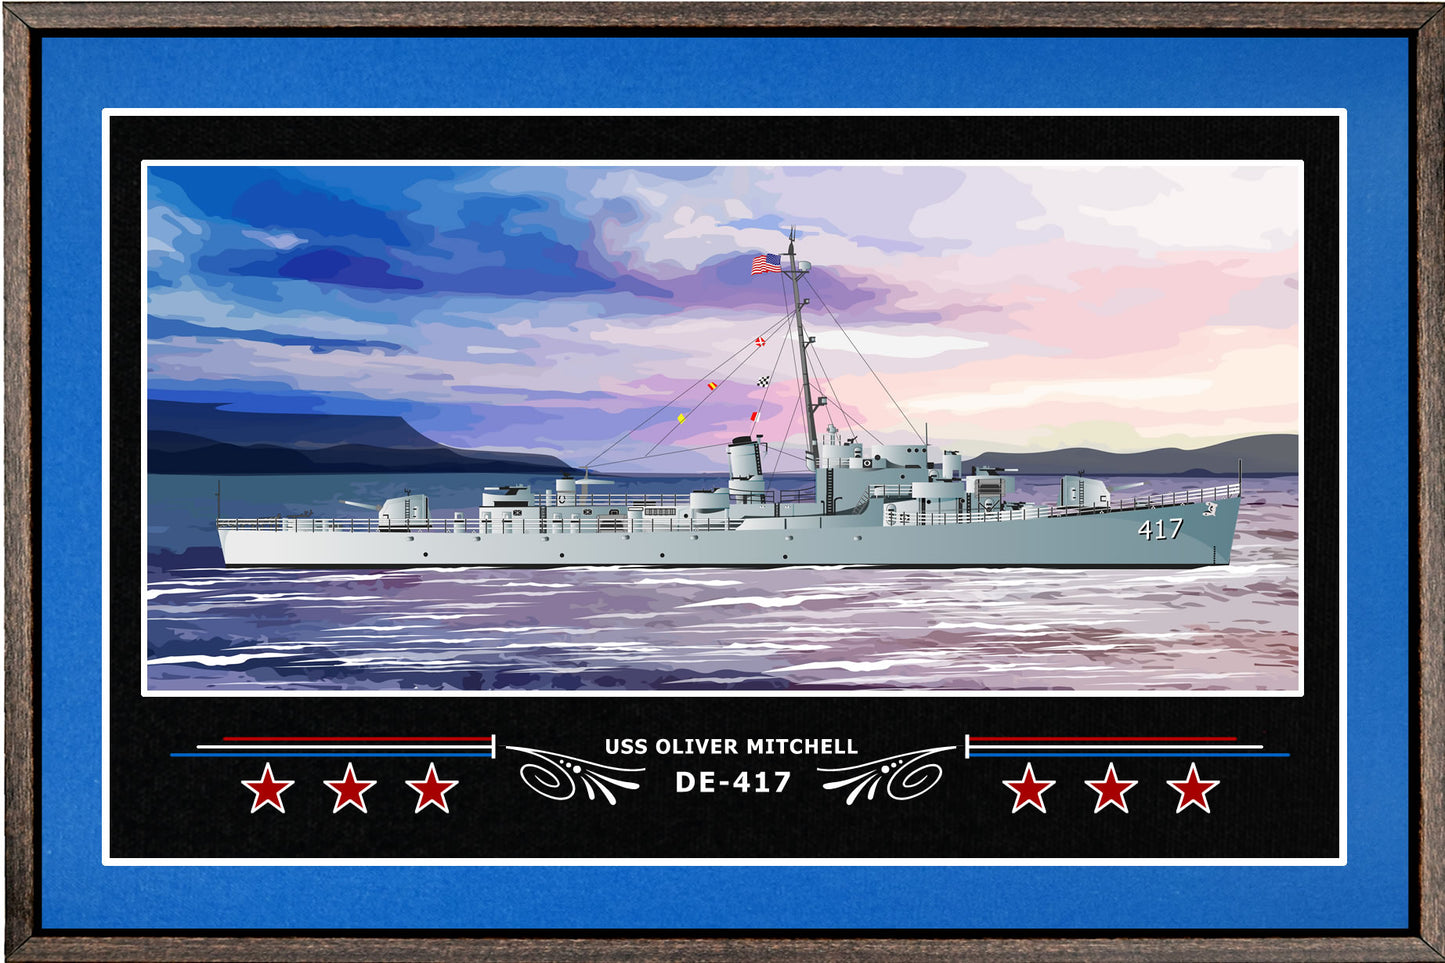 USS OLIVER MITCHELL DE 417 BOX FRAMED CANVAS ART BLUE